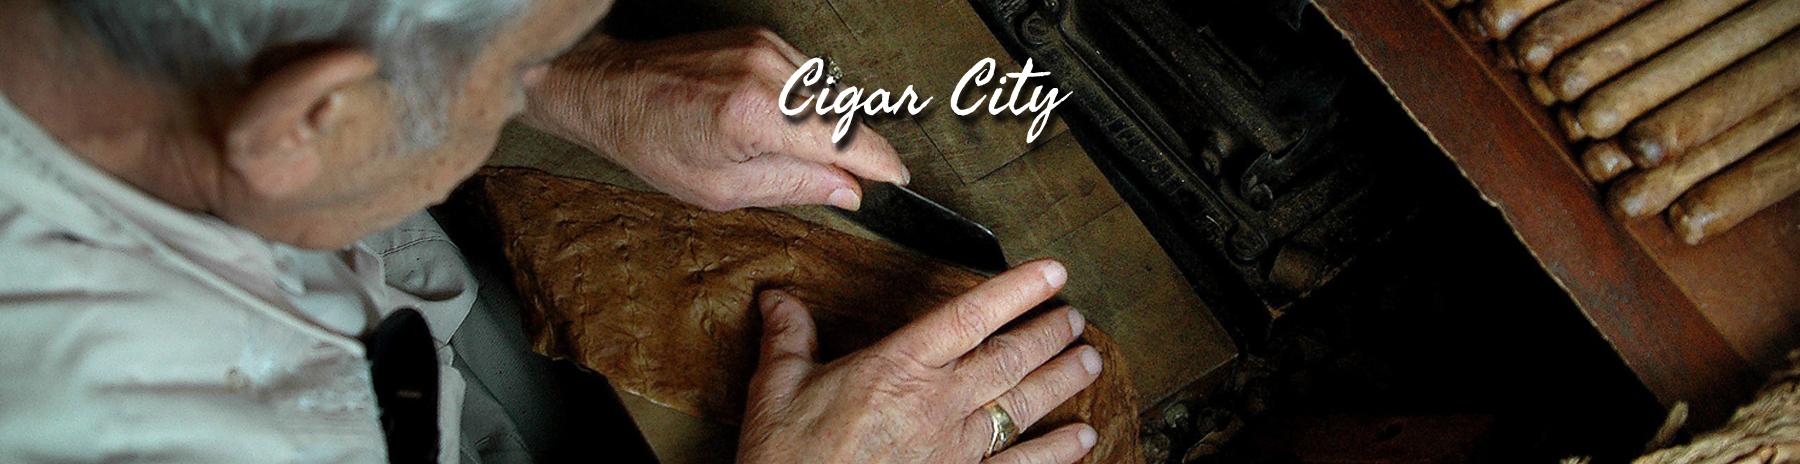 Header-Cigar-City.jpg